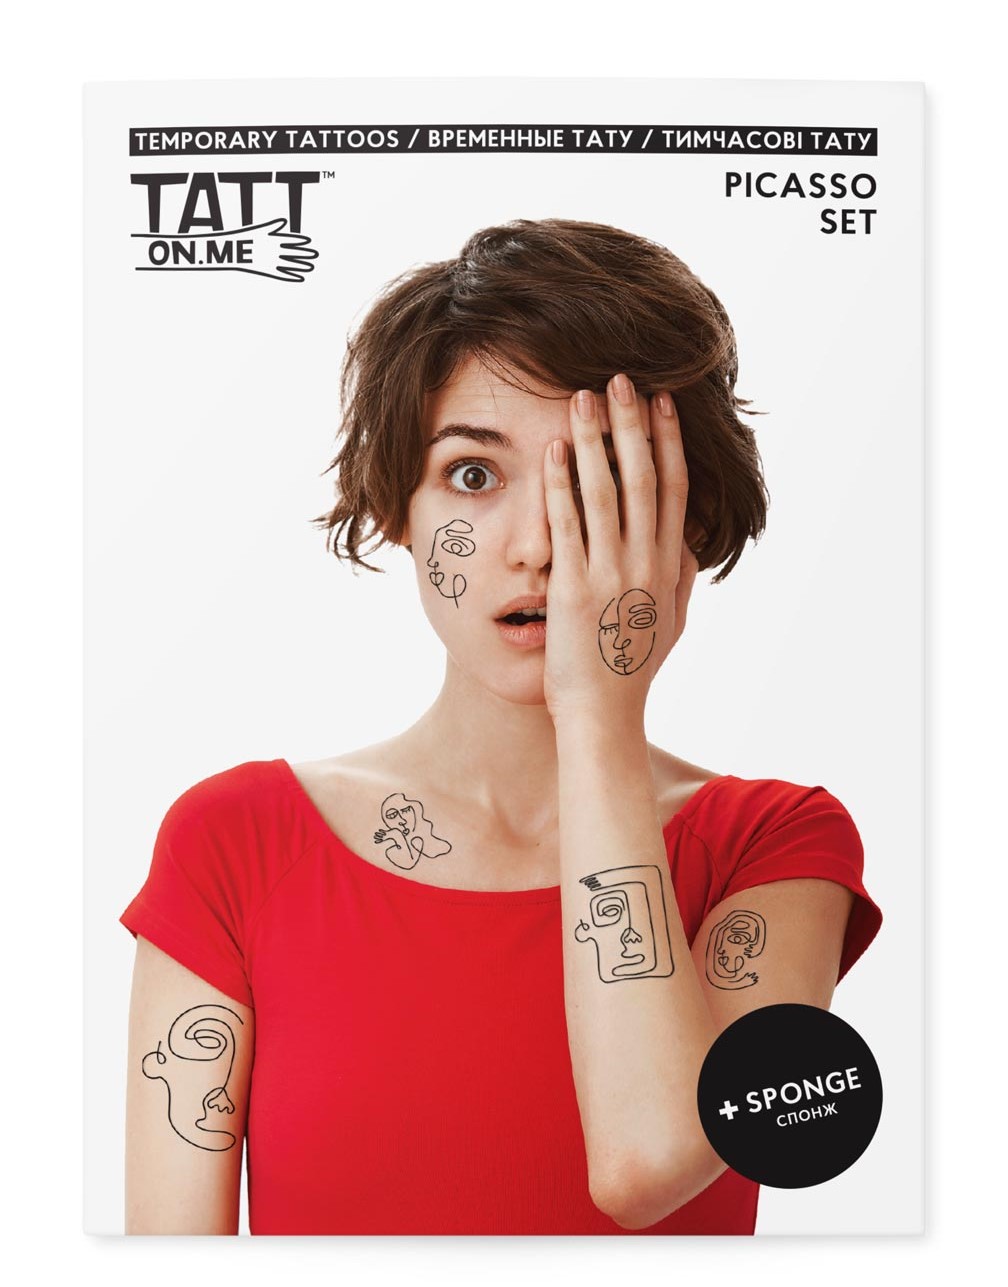 Tatuaje temporare - Picasso | Tatton.me